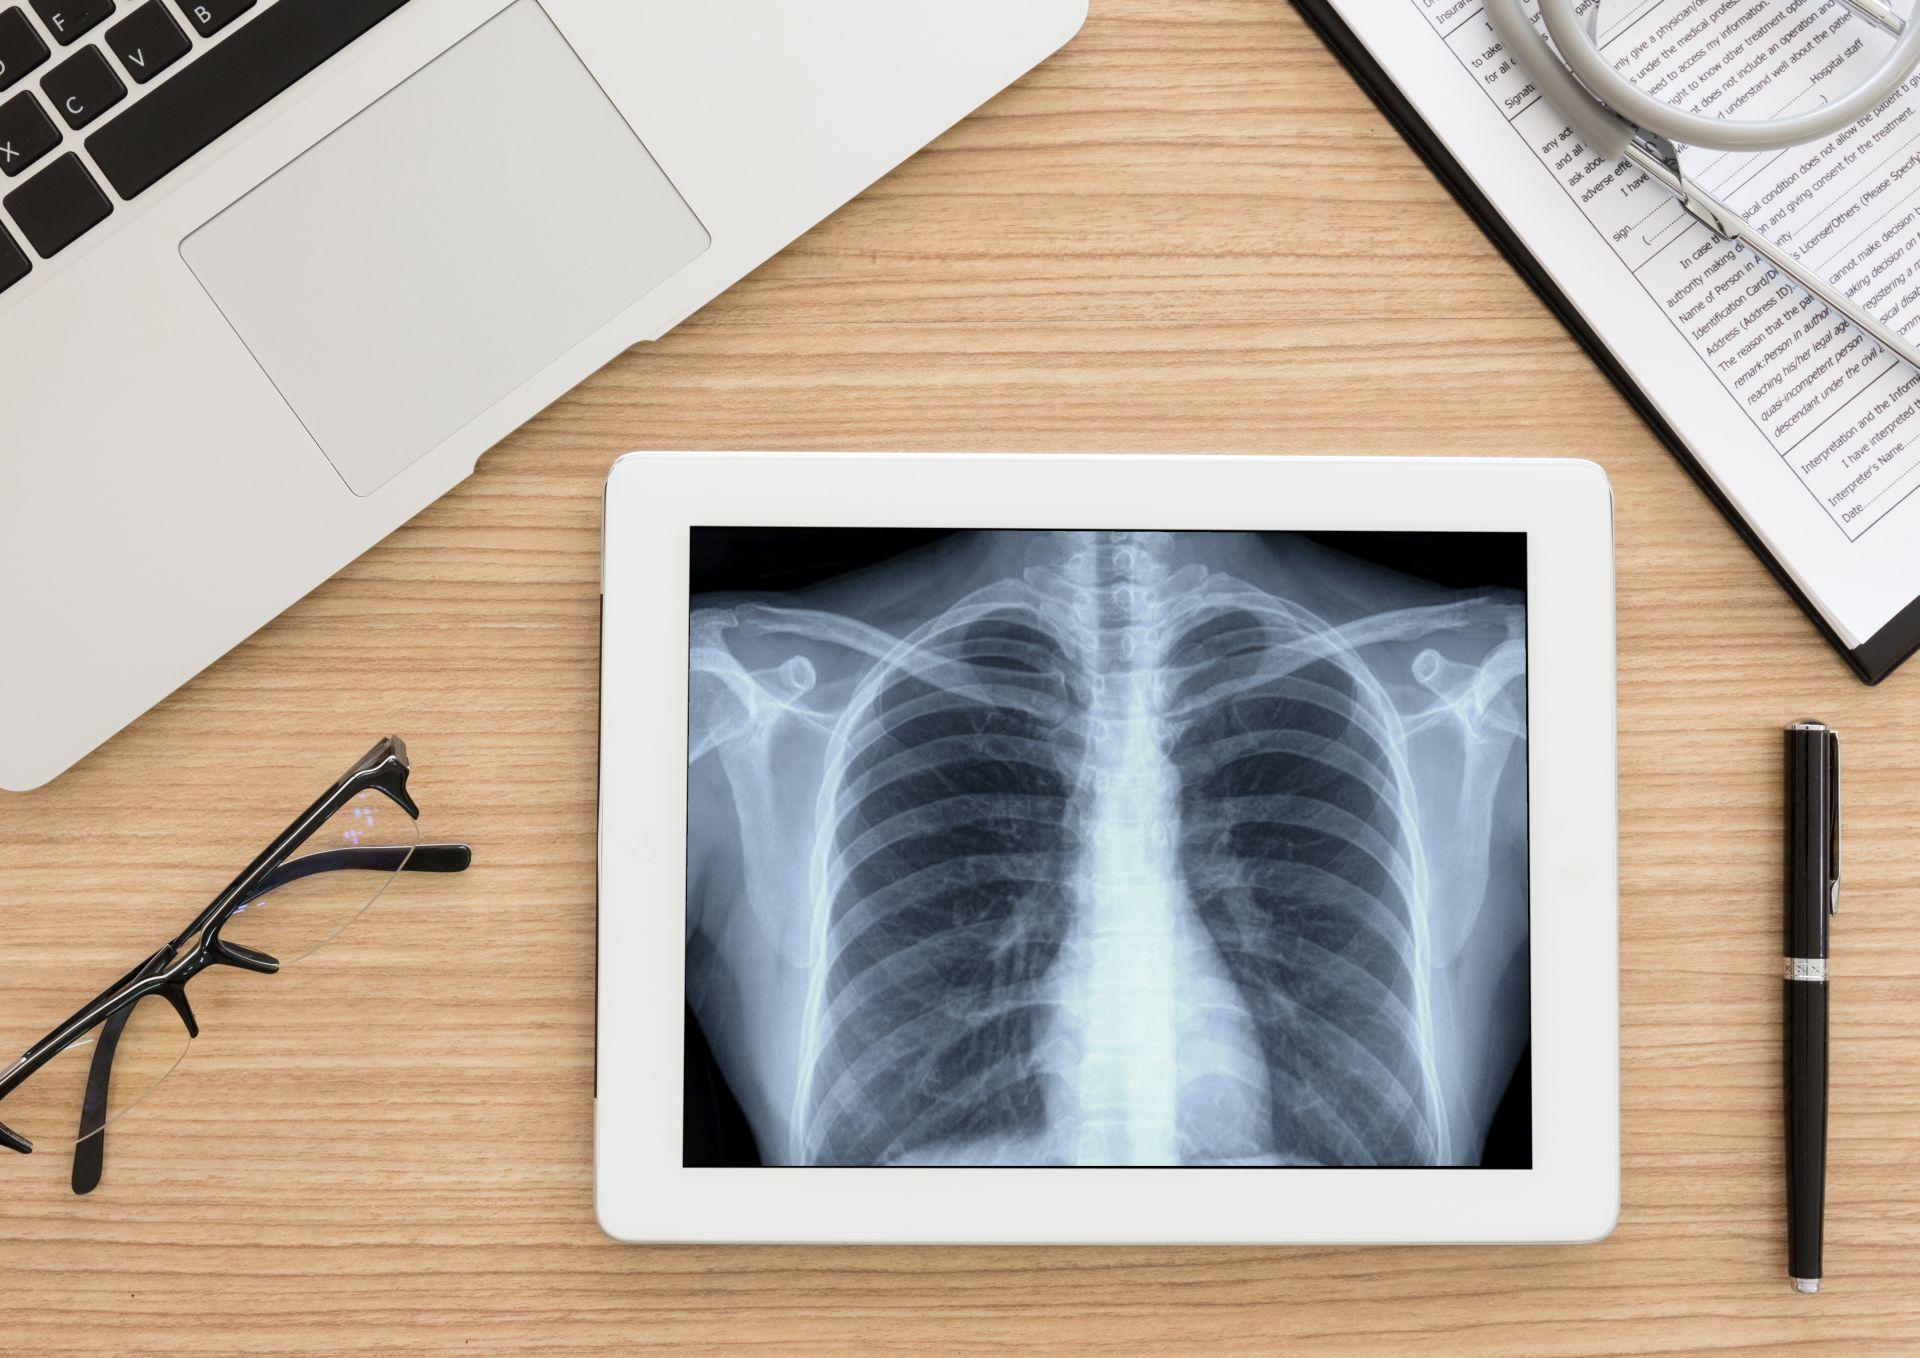 Gesundheitswesen und medizinisches Konzept. Lungenröntgenbild des Scan-Brustpatienten auf digitalem Tablettbildschirm. Draufsicht.